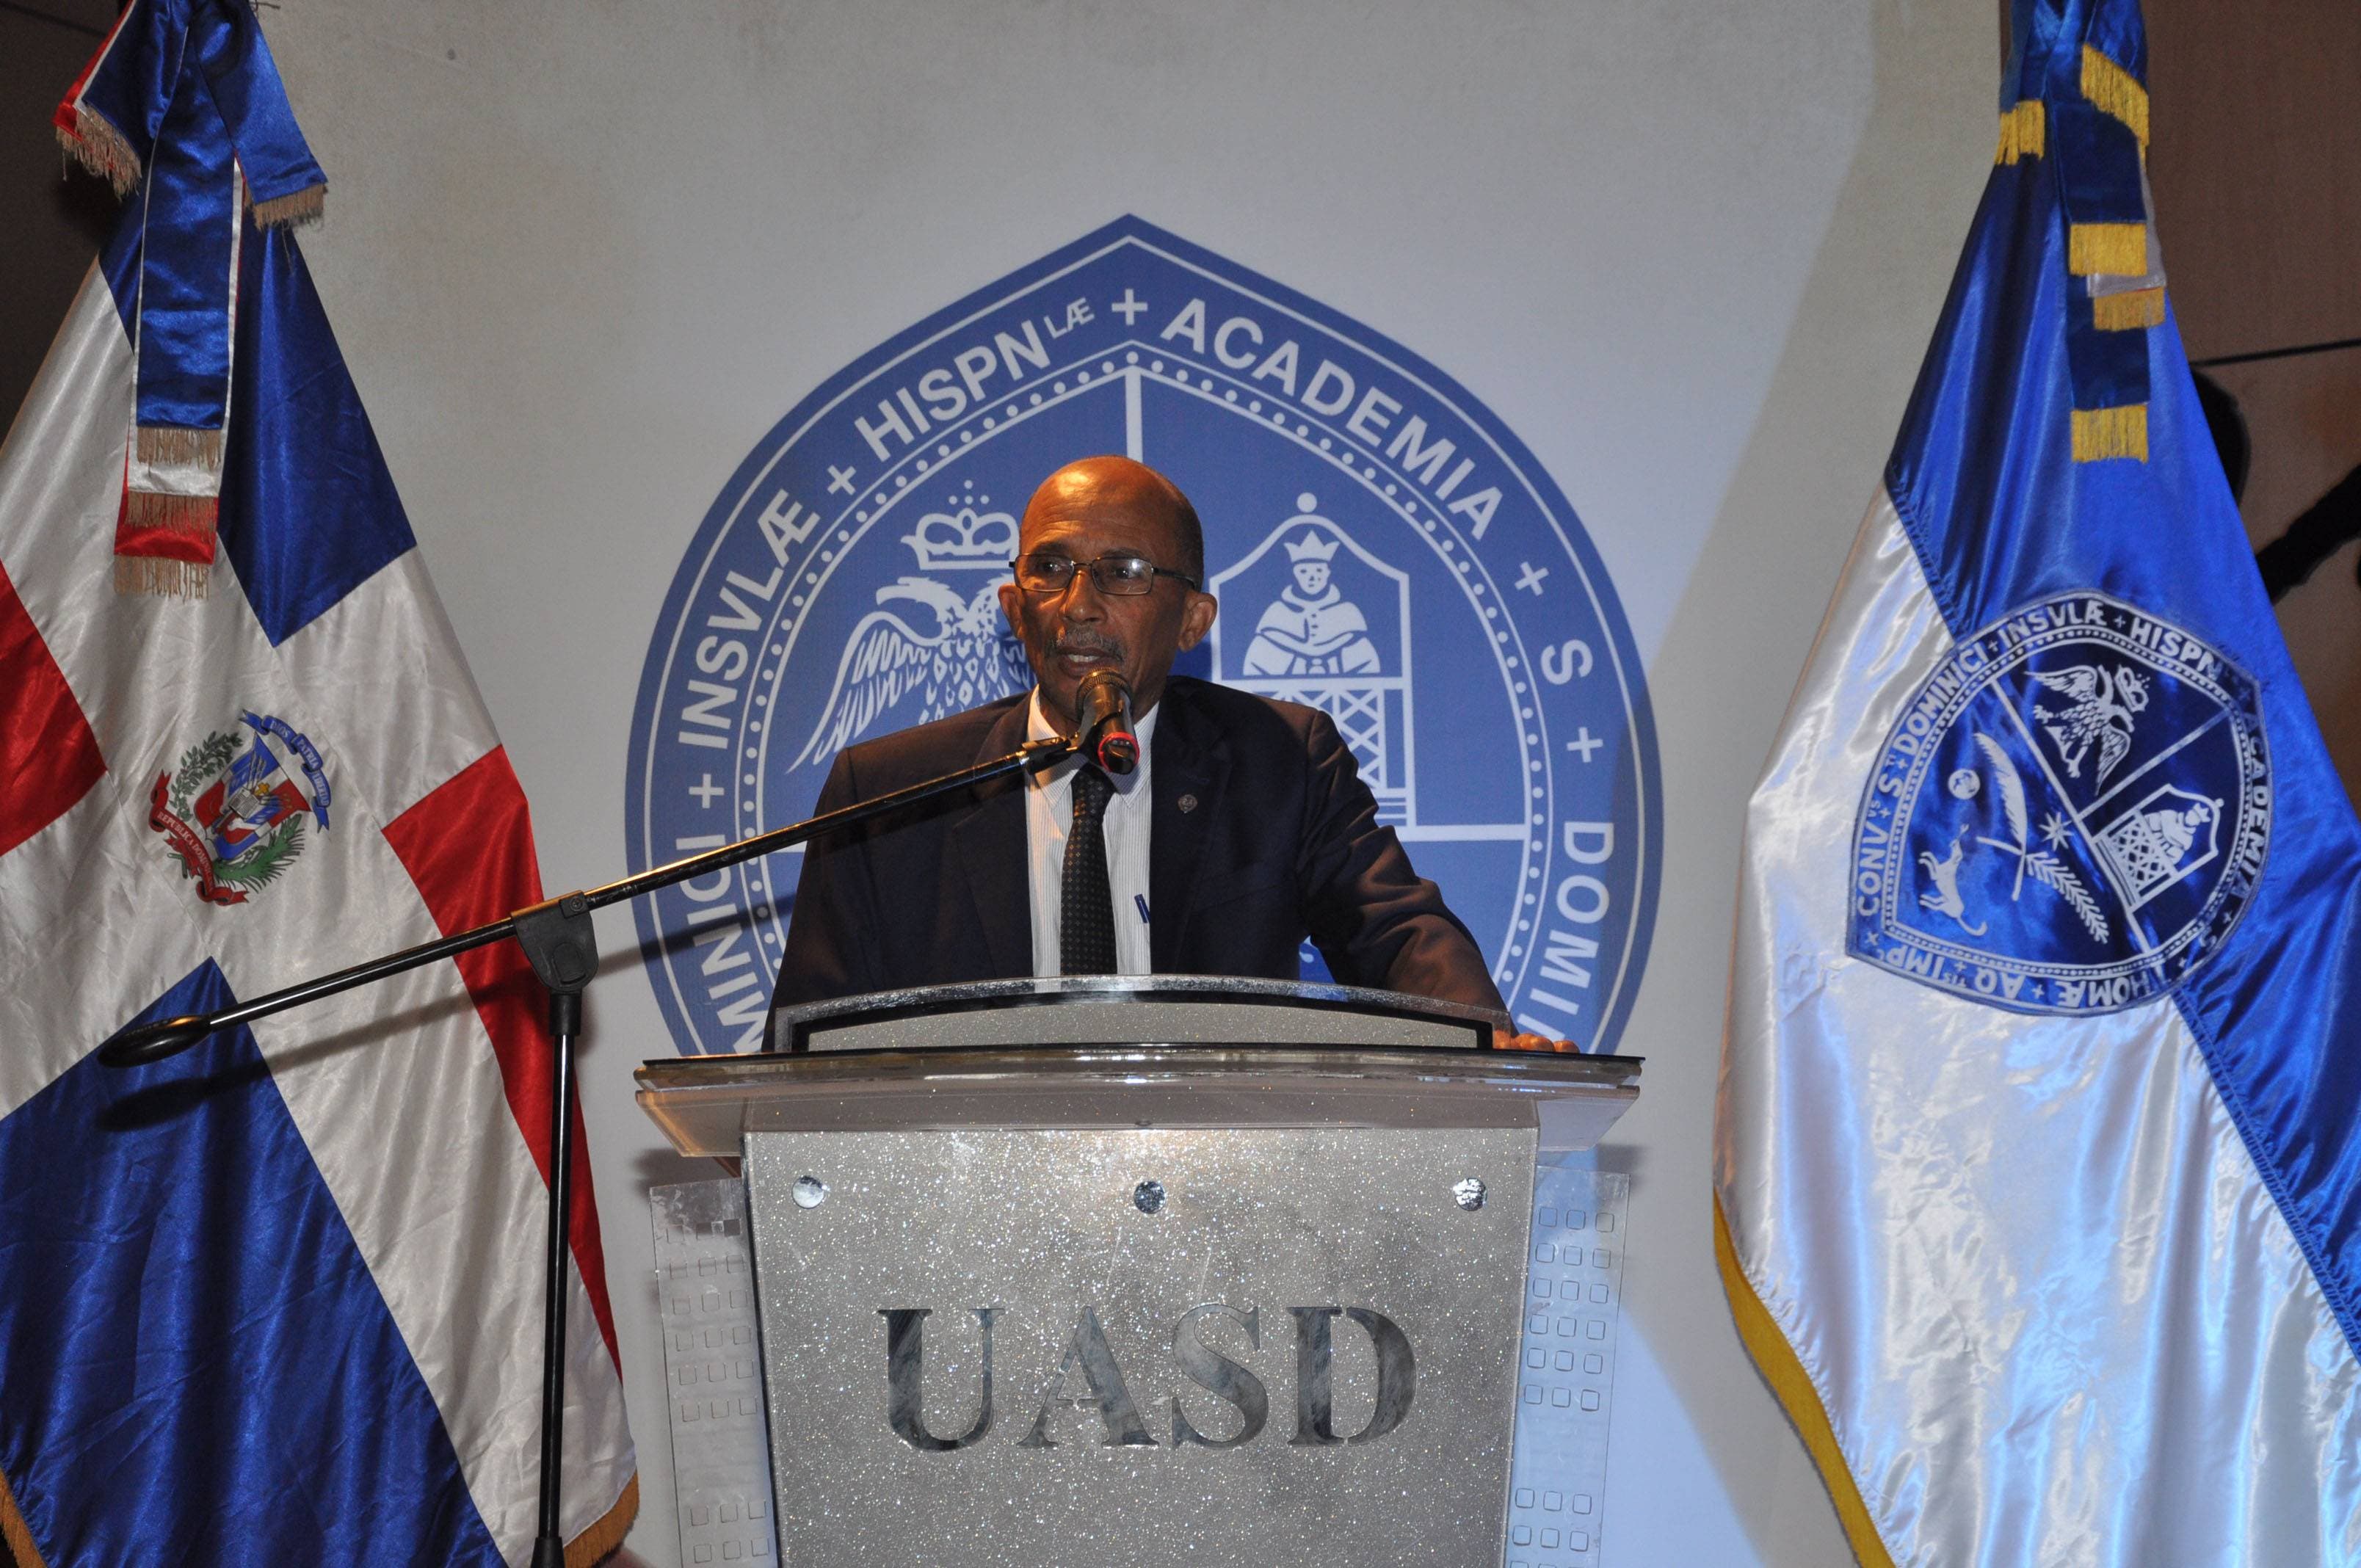 Retan candidatos a rectores de la UASD a debatir proyectos para lograr saneamientos de la academia